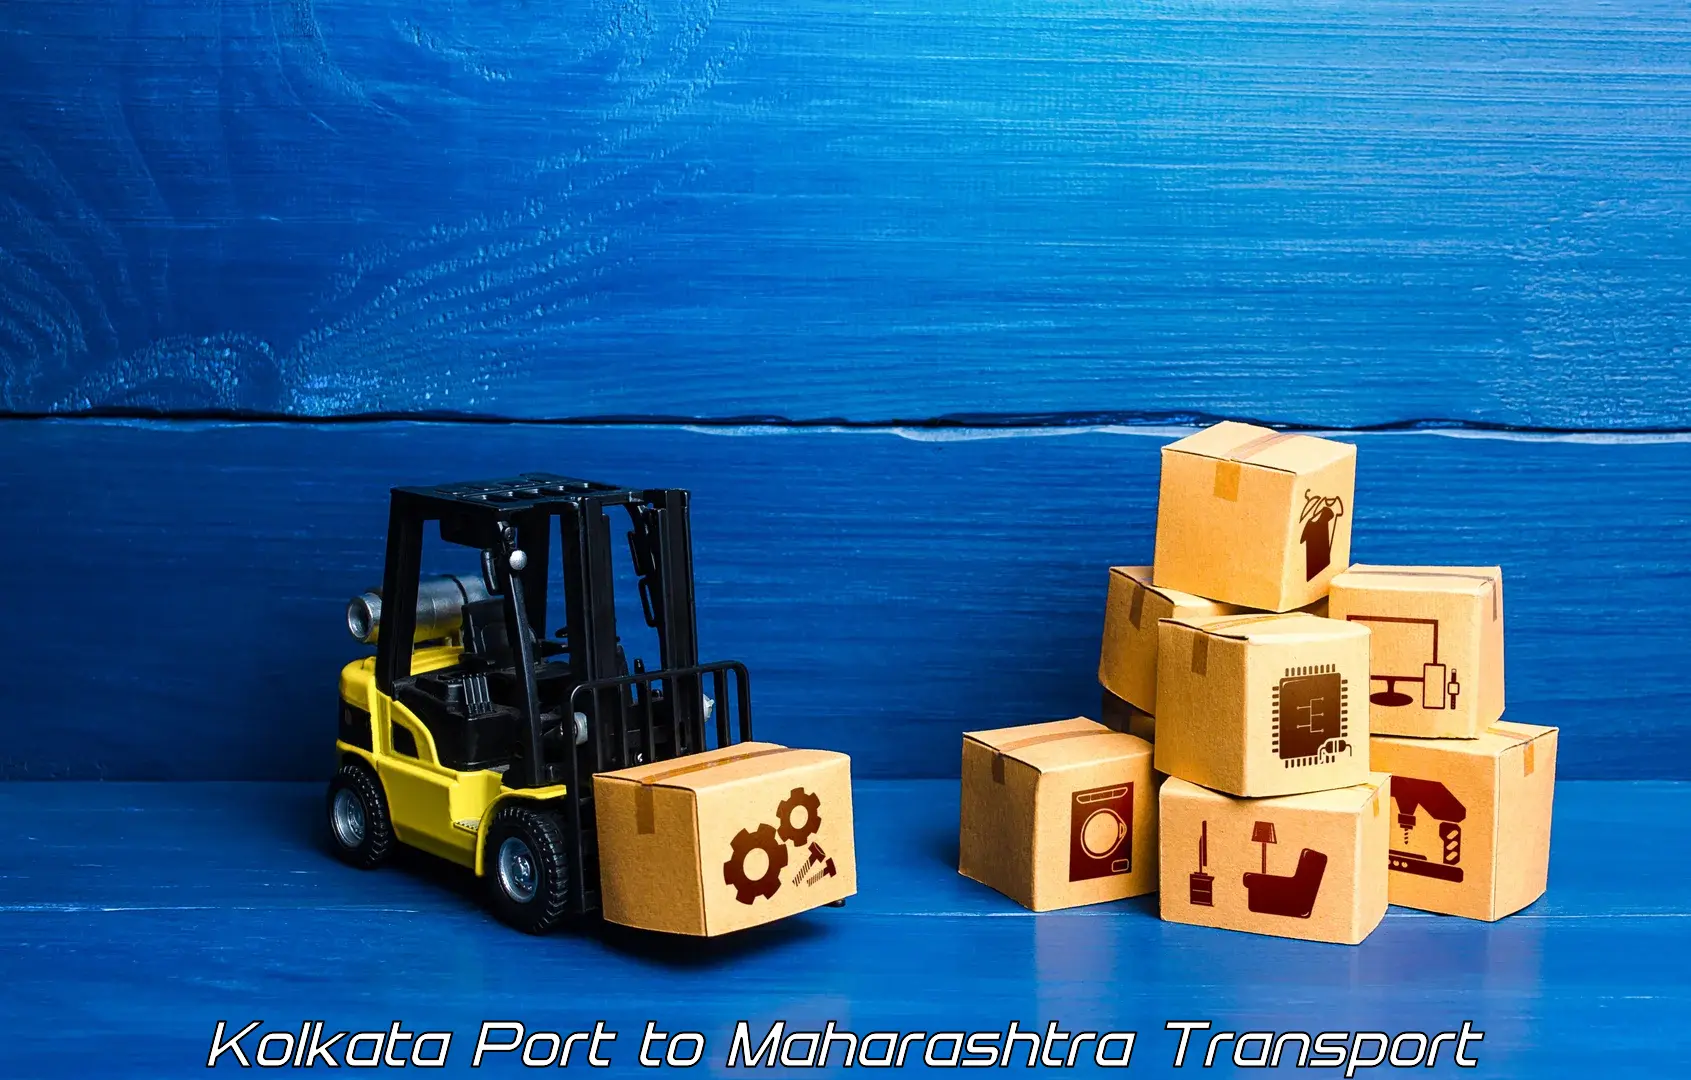 Pick up transport service Kolkata Port to Kalyan